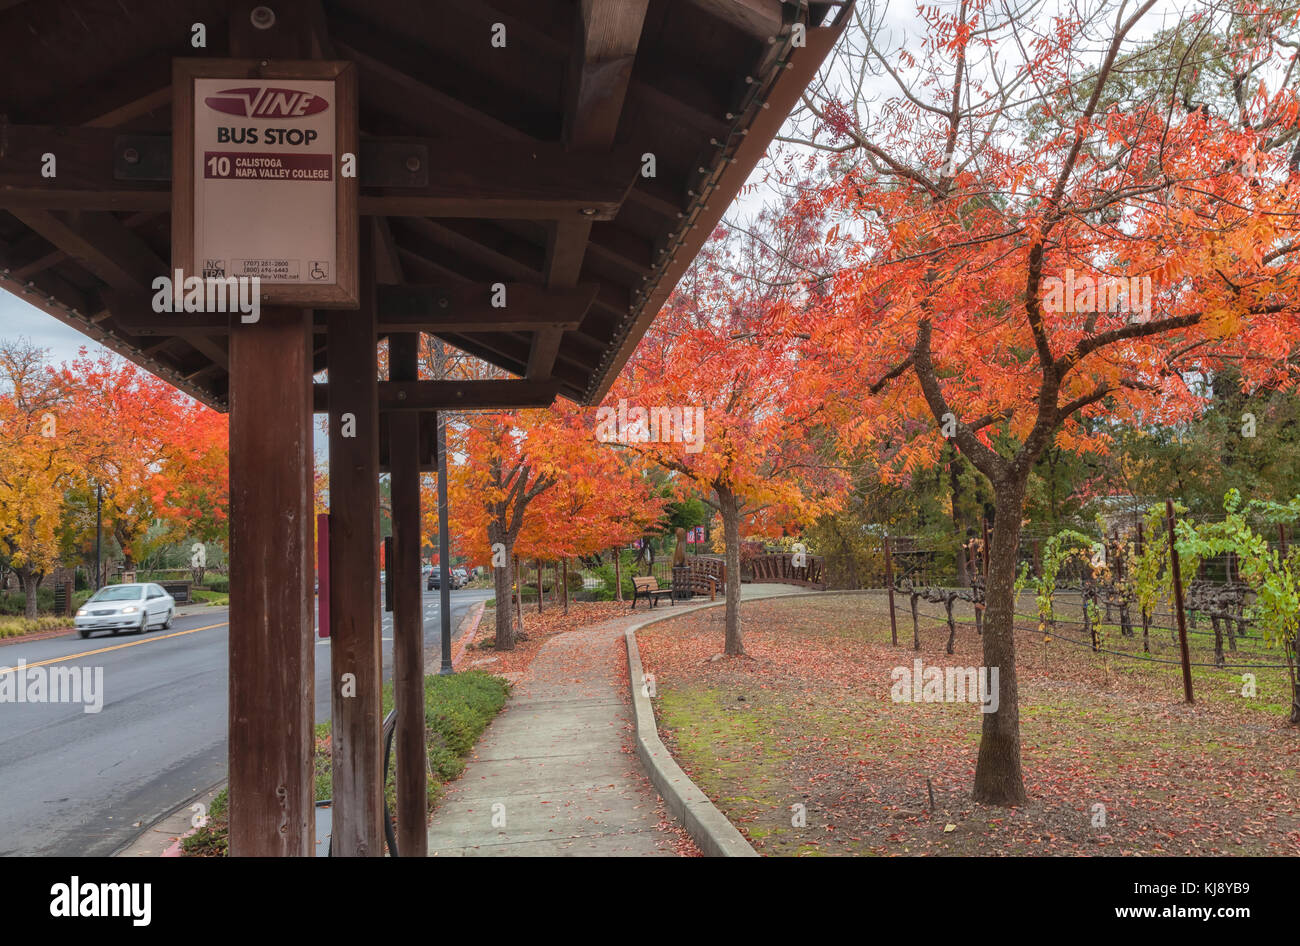 Die Bushaltestelle, und chinesischen Pistache (Pistacia chinensis), in den Farben des Herbstes, Yountville, Napa Valley, Kalifornien, USA. Stockfoto